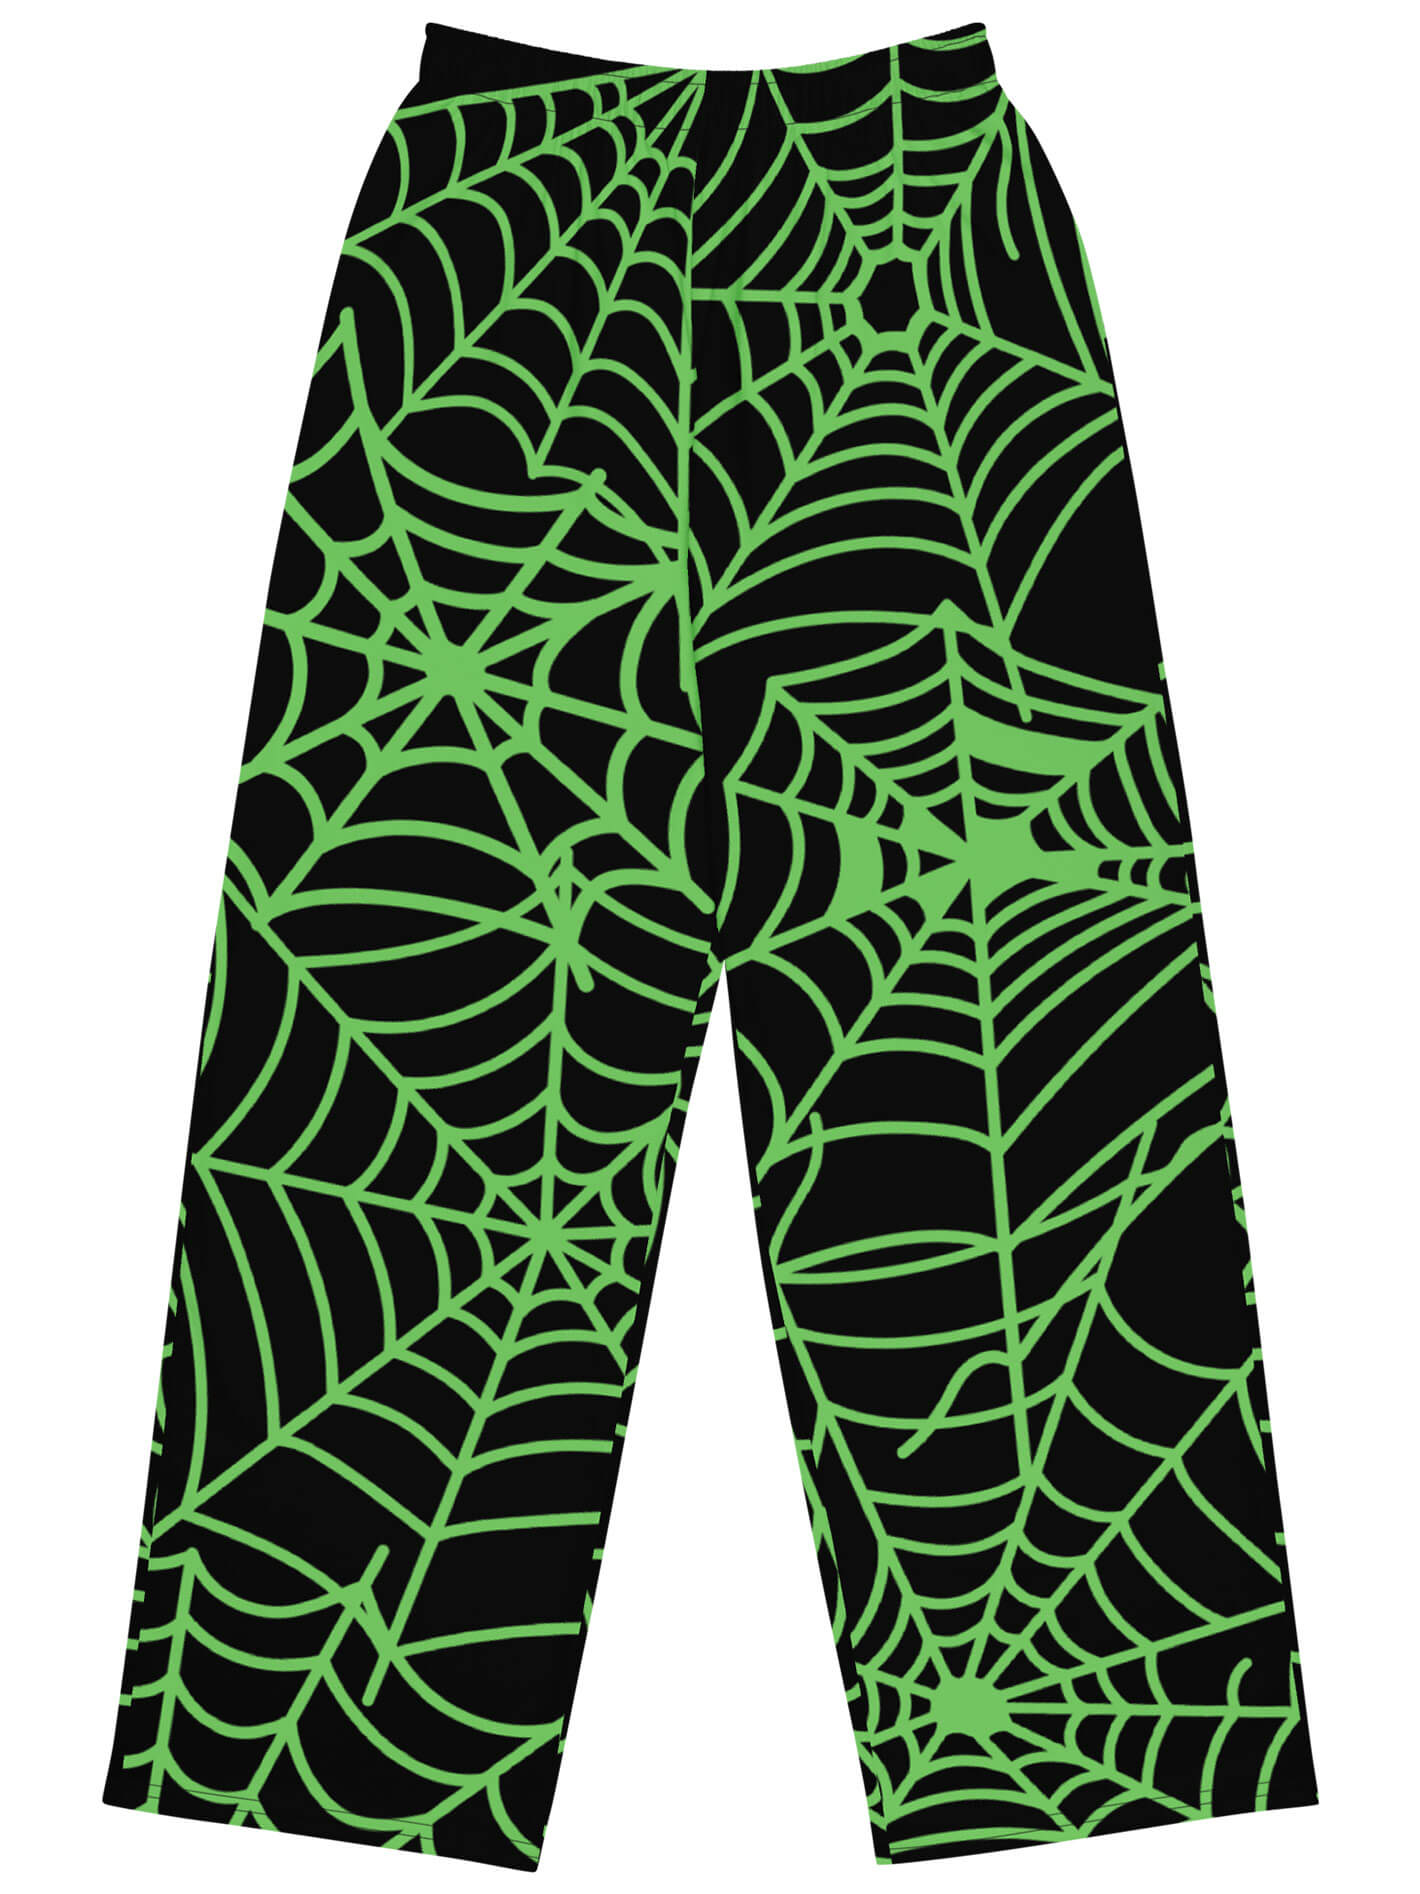 Plus size Halloween spiderweb pants.